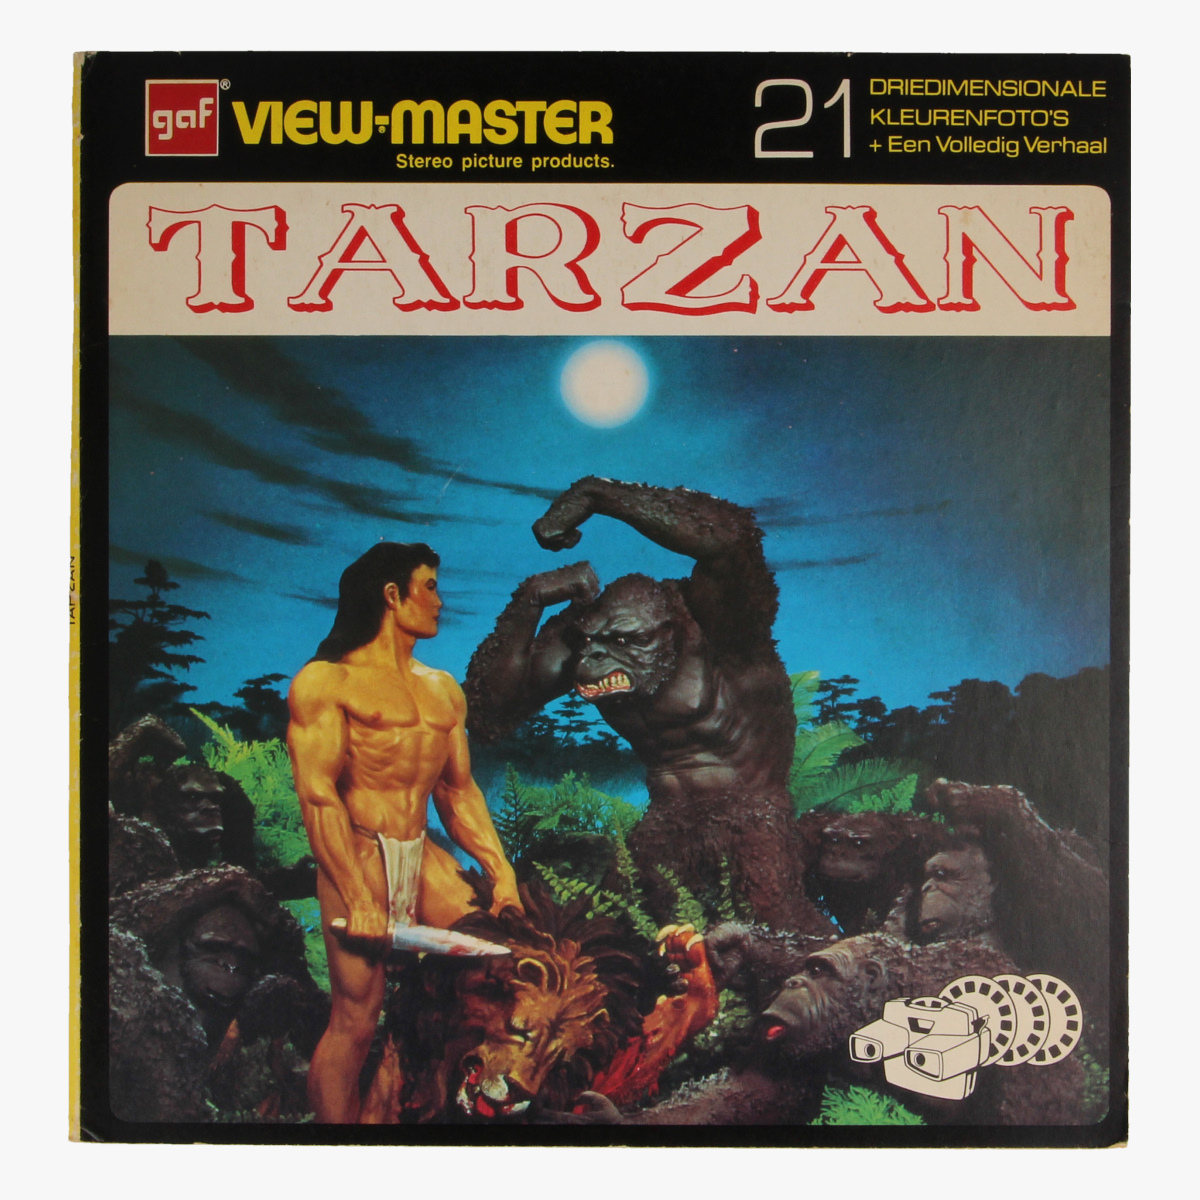 Afbeeldingen van View-master Tarzan van de apen B4441,B4442,B4443